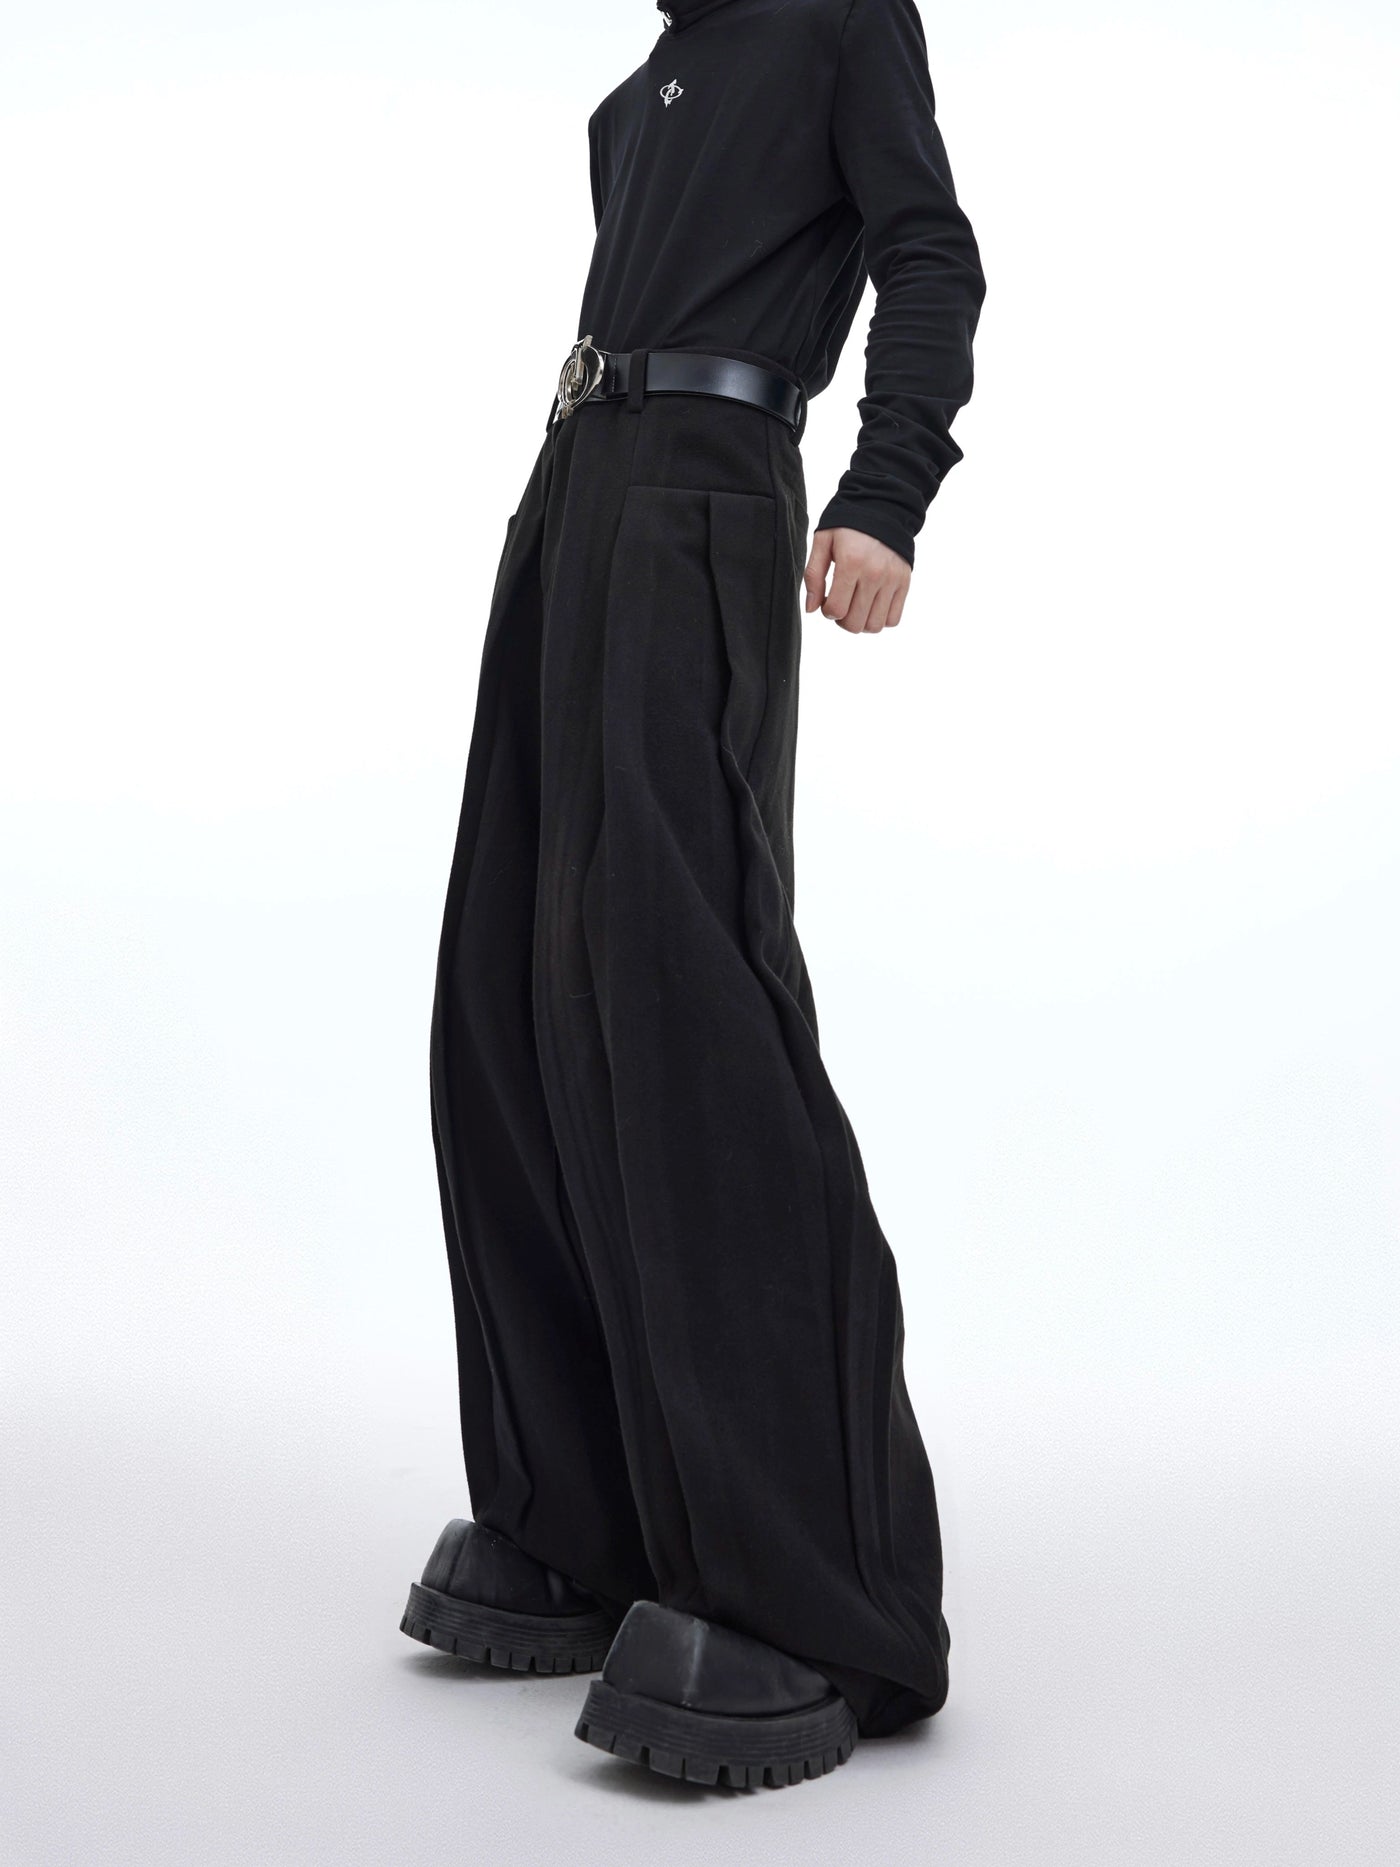 Pleats Drapey Wide Pants Korean Street Fashion Pants By Argue Culture Shop Online at OH Vault